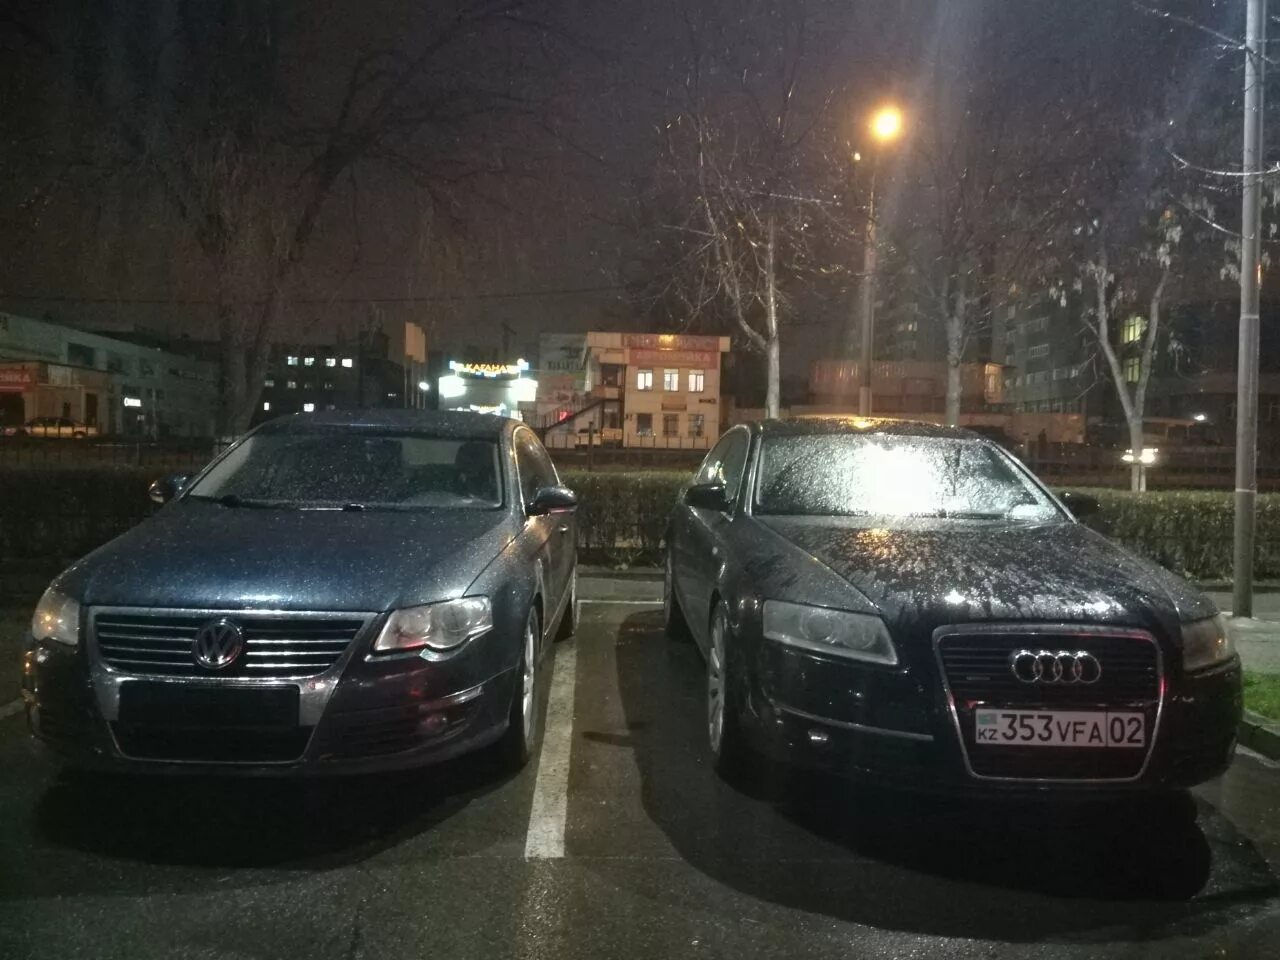 Машины с одинаковыми номерами. 2 Одинаковые машины. Две машины с одинаковыми номерами. Машины с одинаковыми номерами эстеьичкна. Вижу одинаковые номера